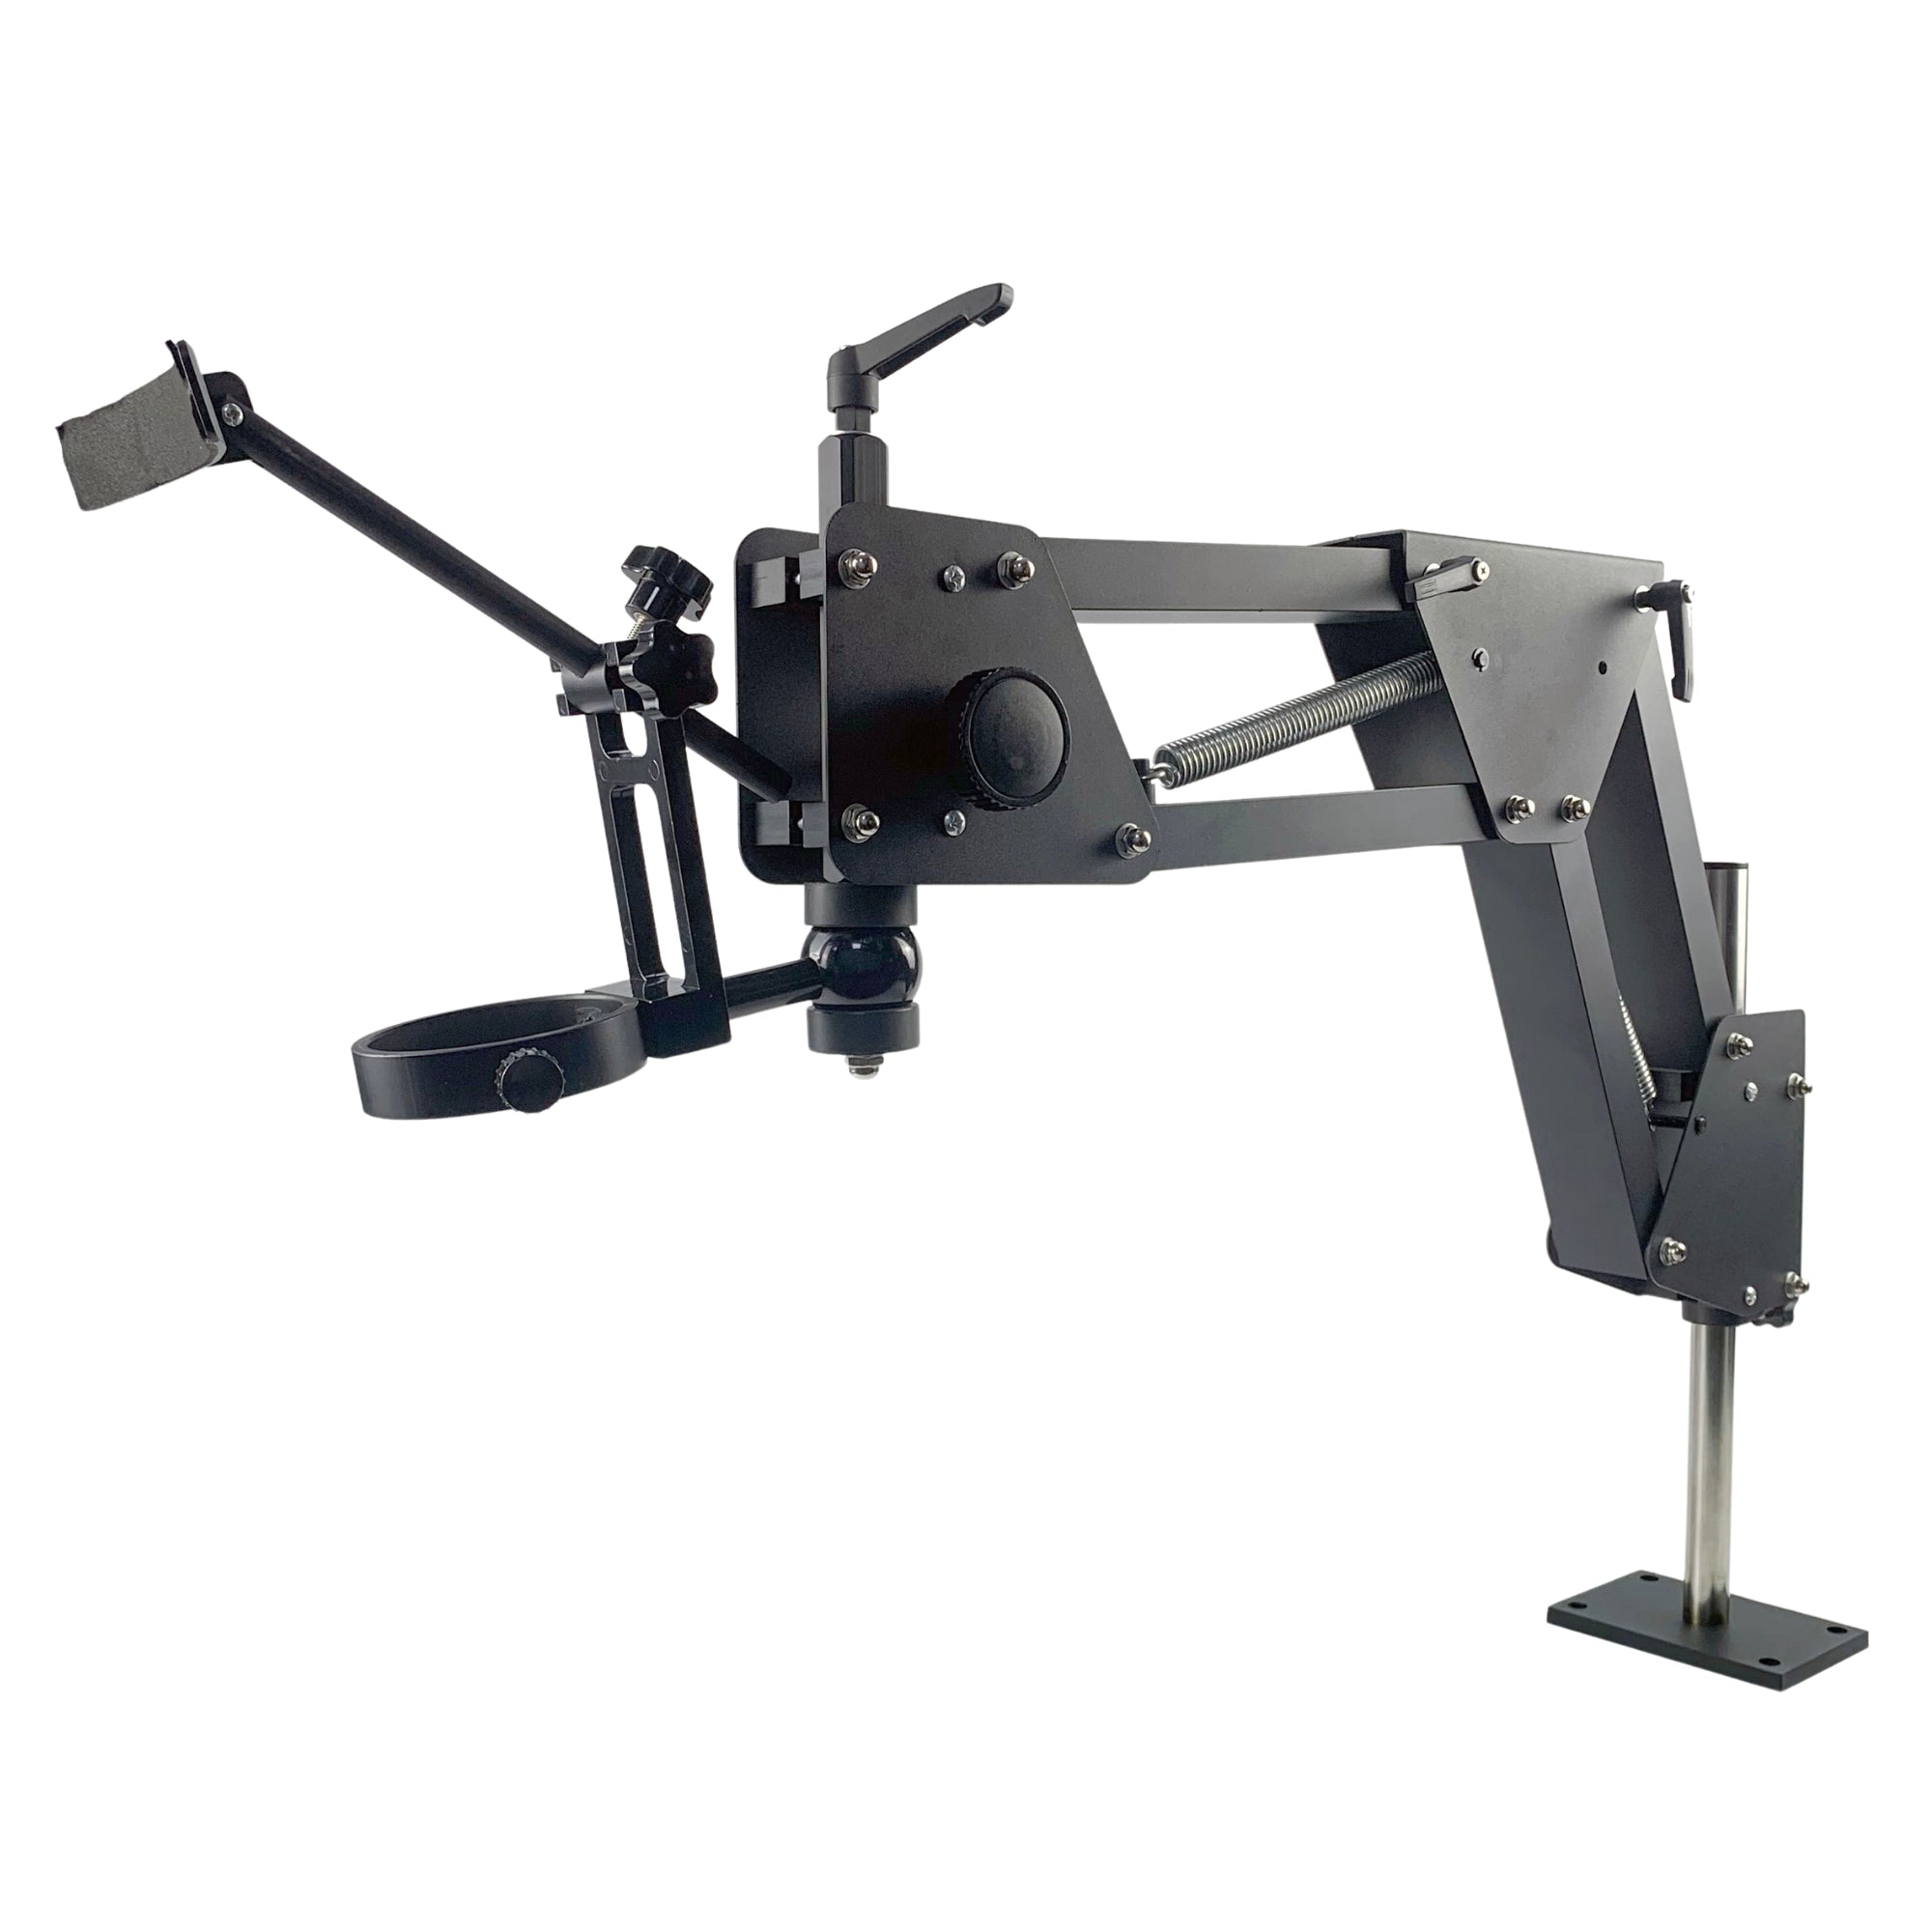 Juego de microscopio Phaser con soporte con soporte diseñado para montaje fijo en una mesa de orfebre o fáser